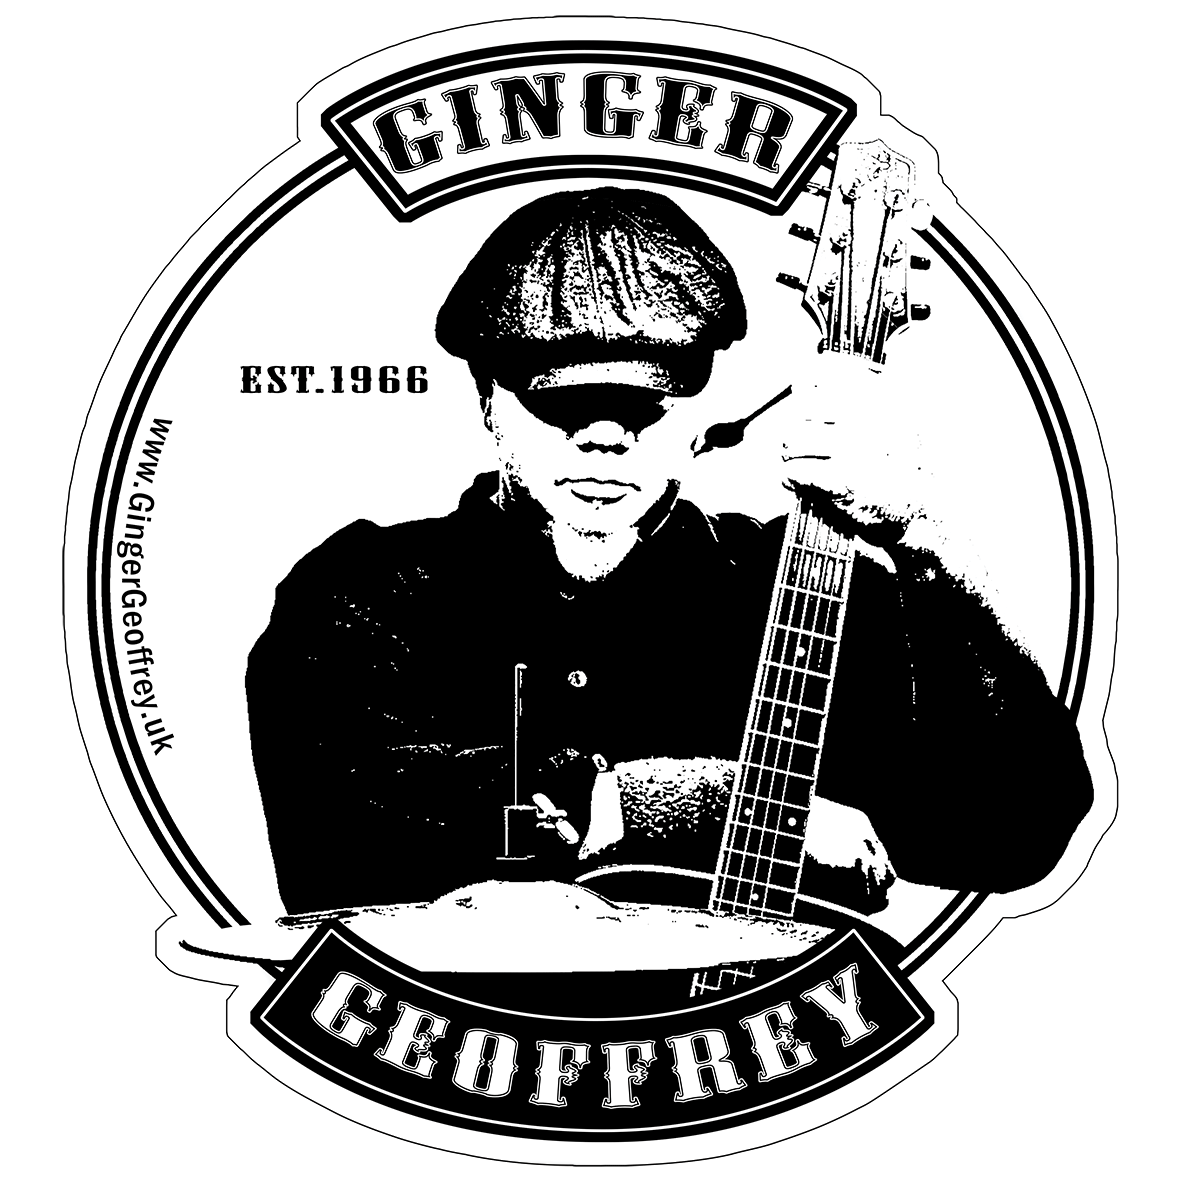 Ginger Geoffrey Logo